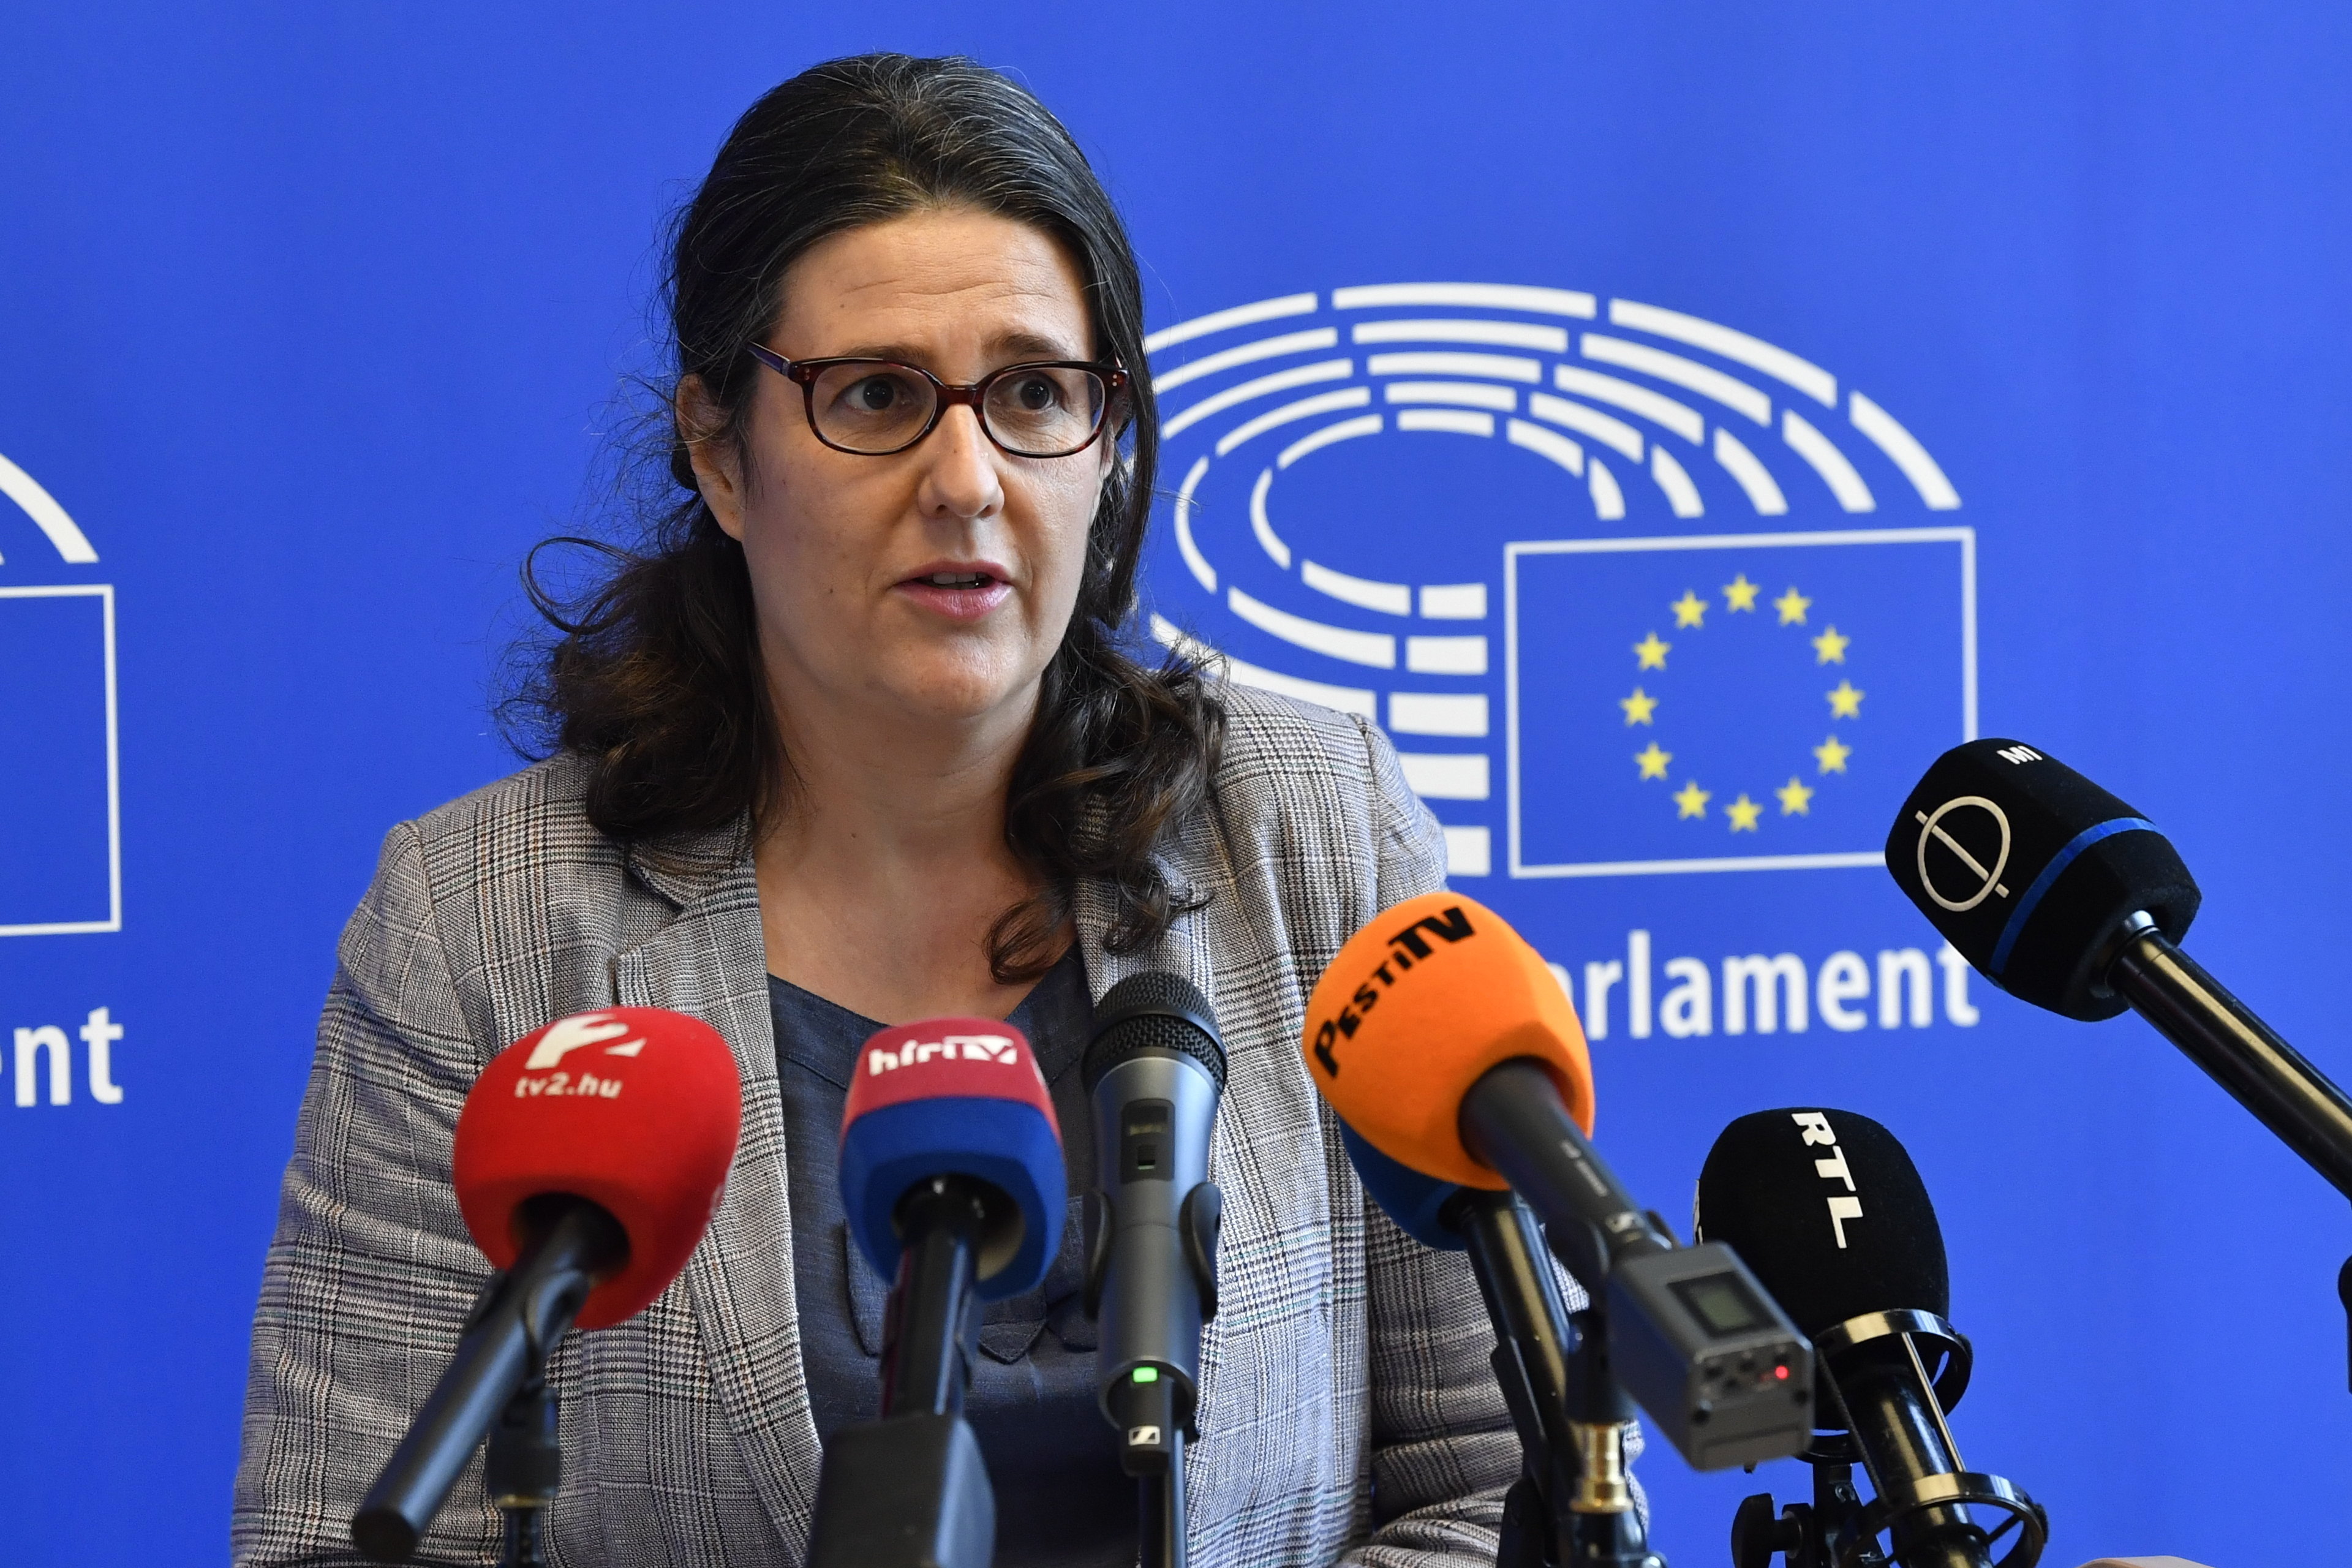 Az EP tényfeltáró delegációját nem győzték meg a magyar hatóságok arról, hogy hazánkban rendben van a jogállamiság